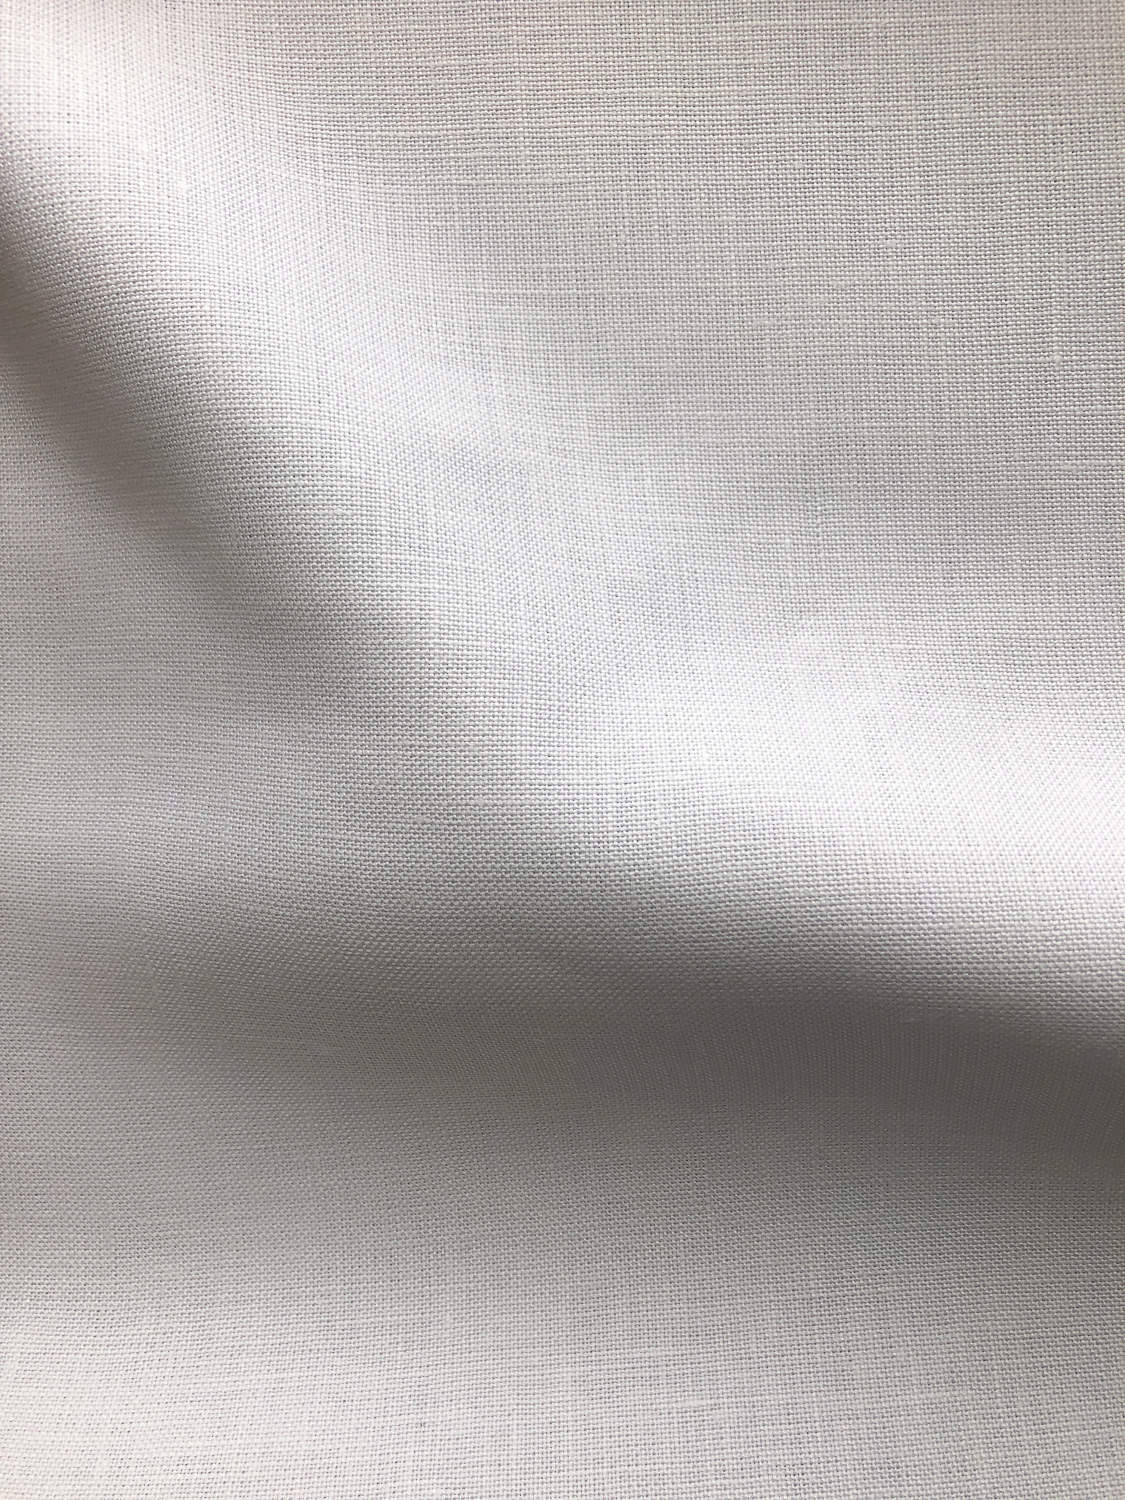 Nevada Linen - White - Stonemountain & Daughter Fabrics